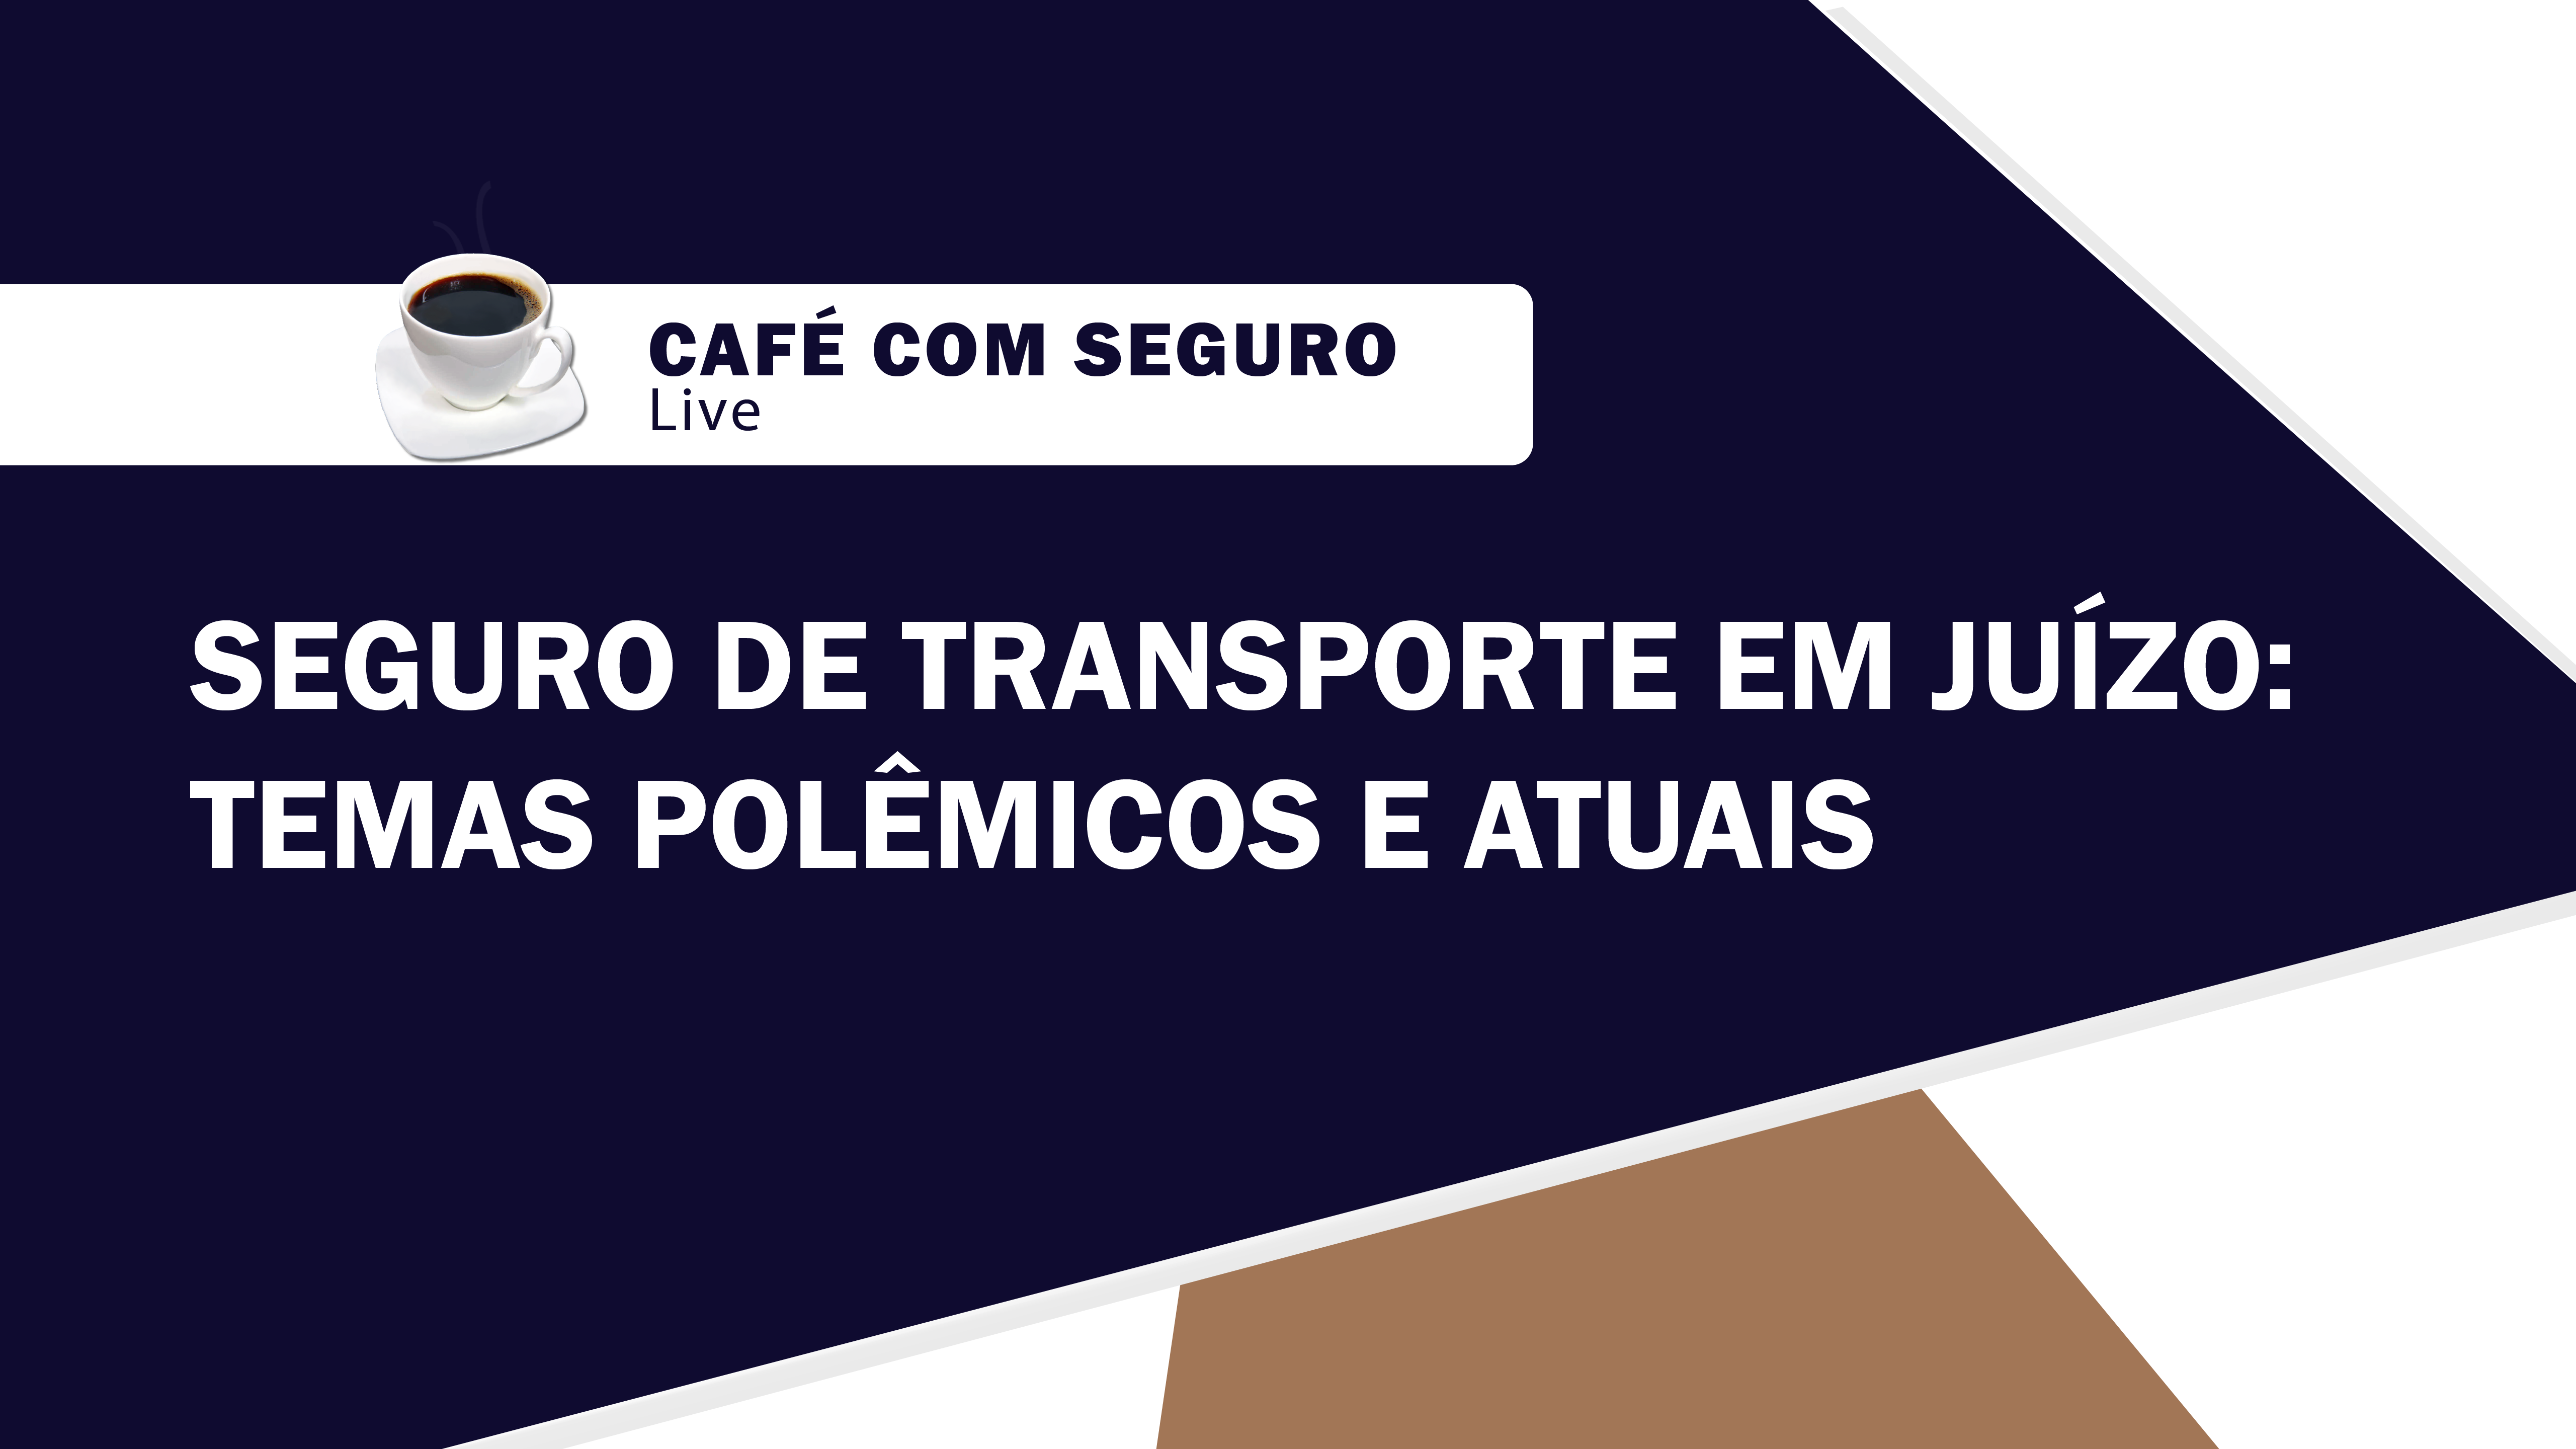 Café com Seguro Live l Seguro de transporte em juízo: Temas polêmicos e atuais